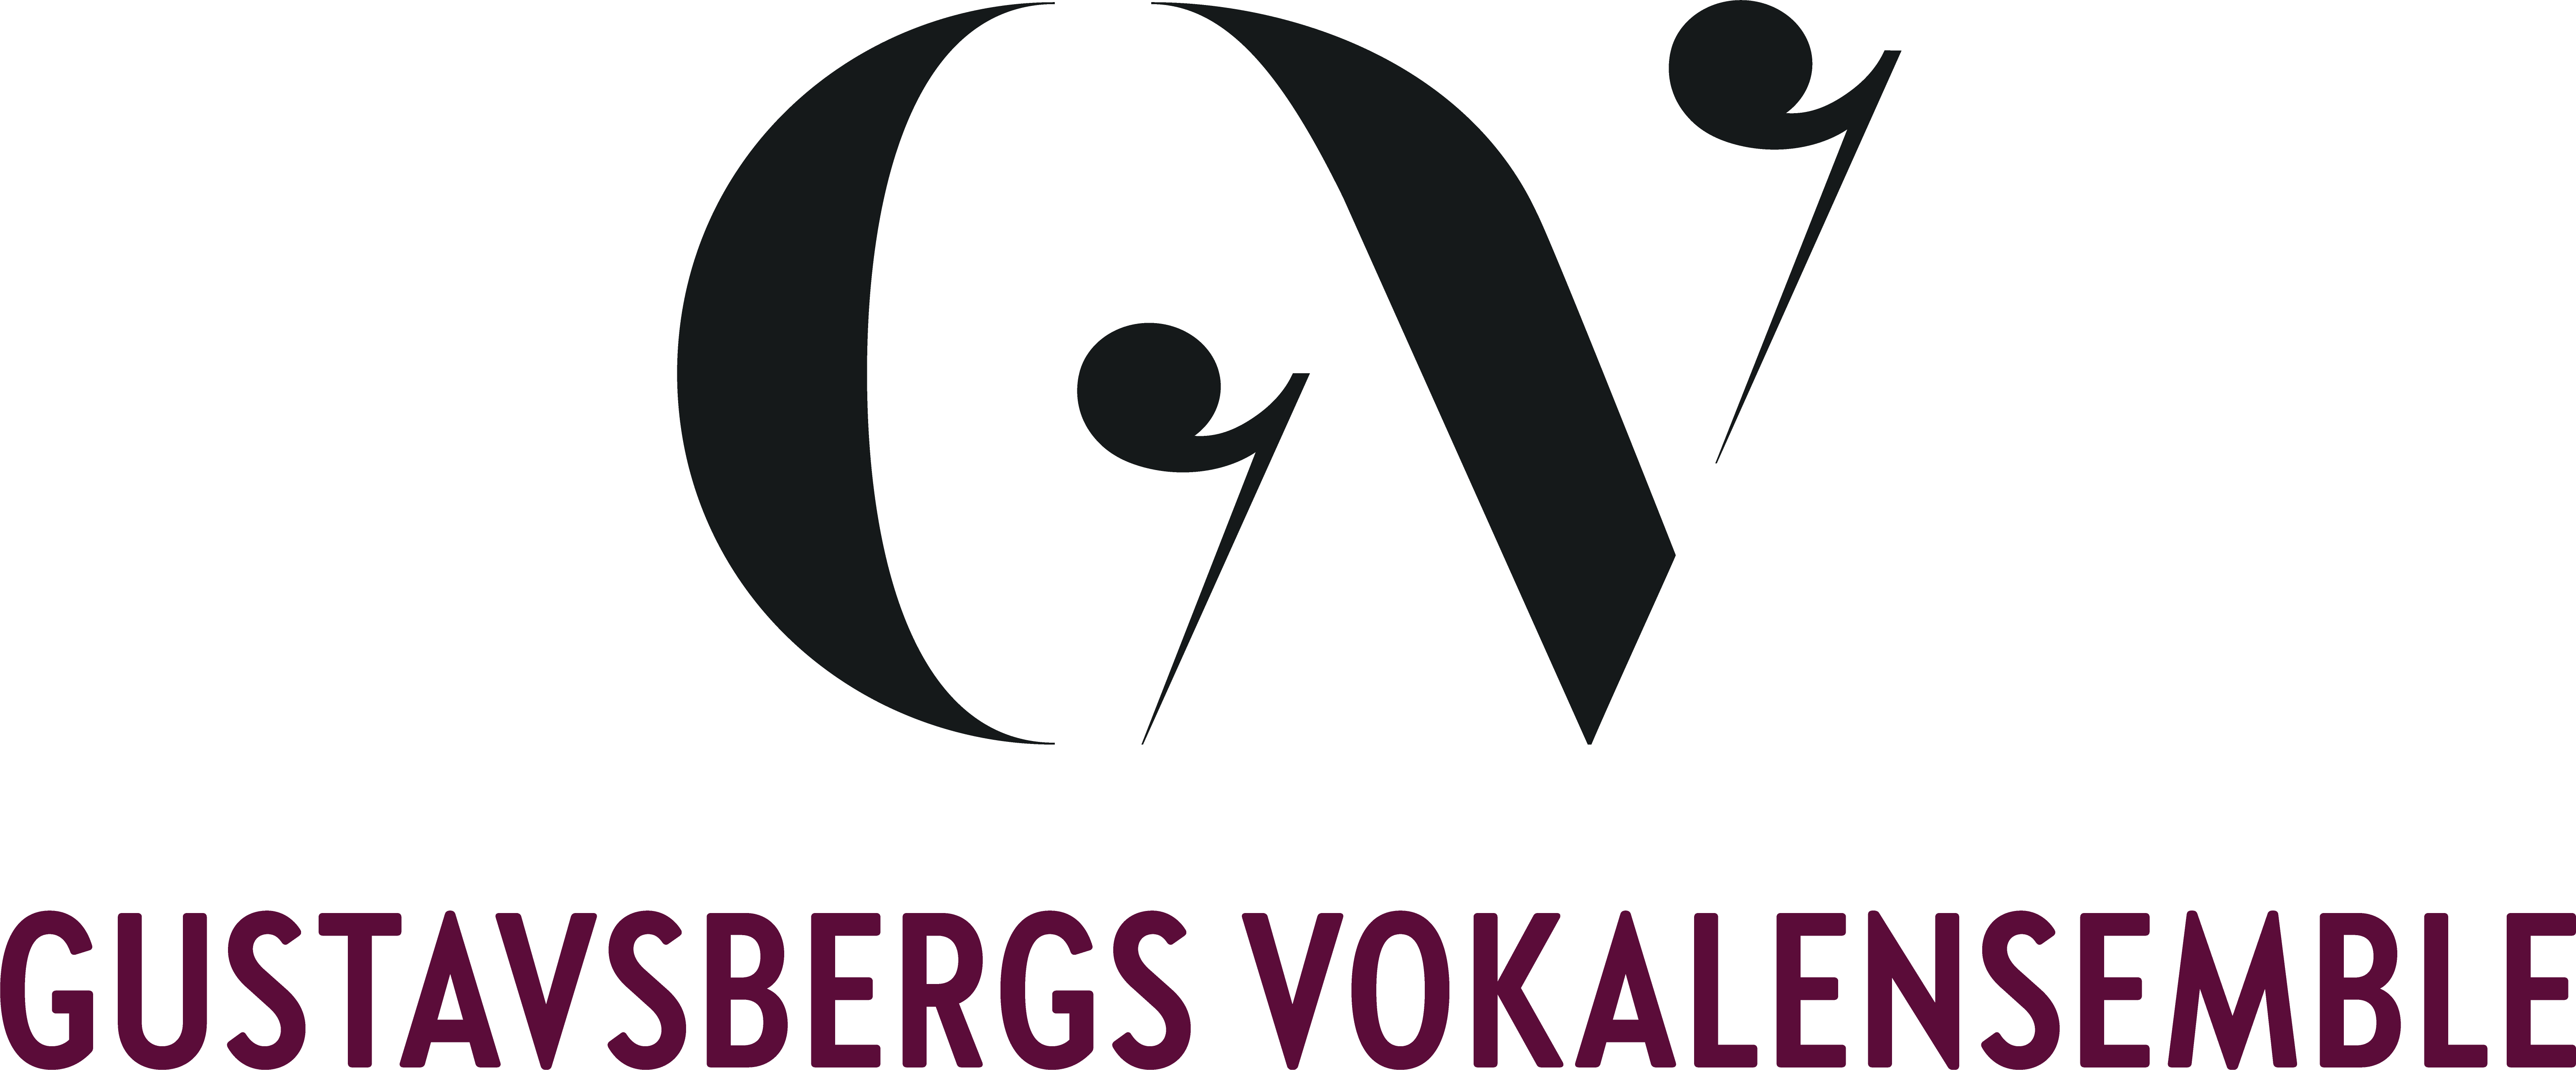 Gustavsbergs Vokalensemble